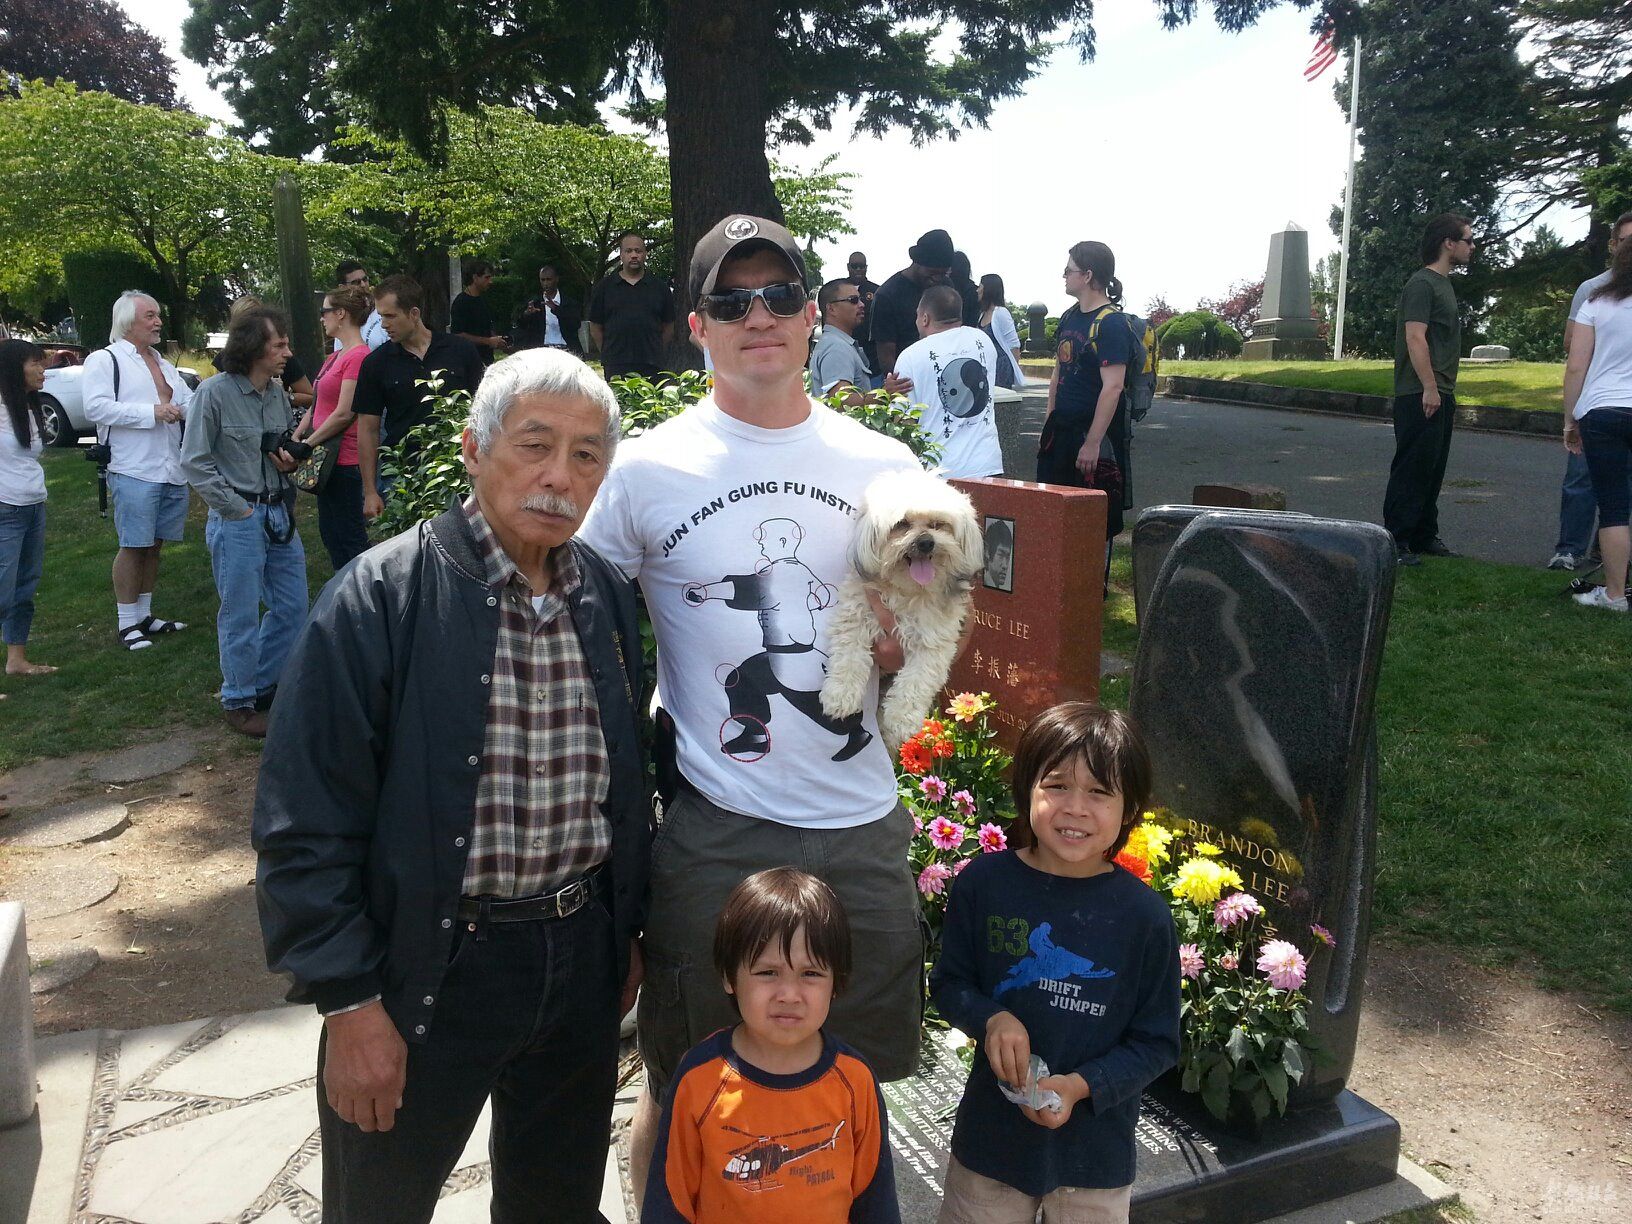 美国李小龙的墓地：儿子永远陪伴在他身边，墓碑前两句话令人深思